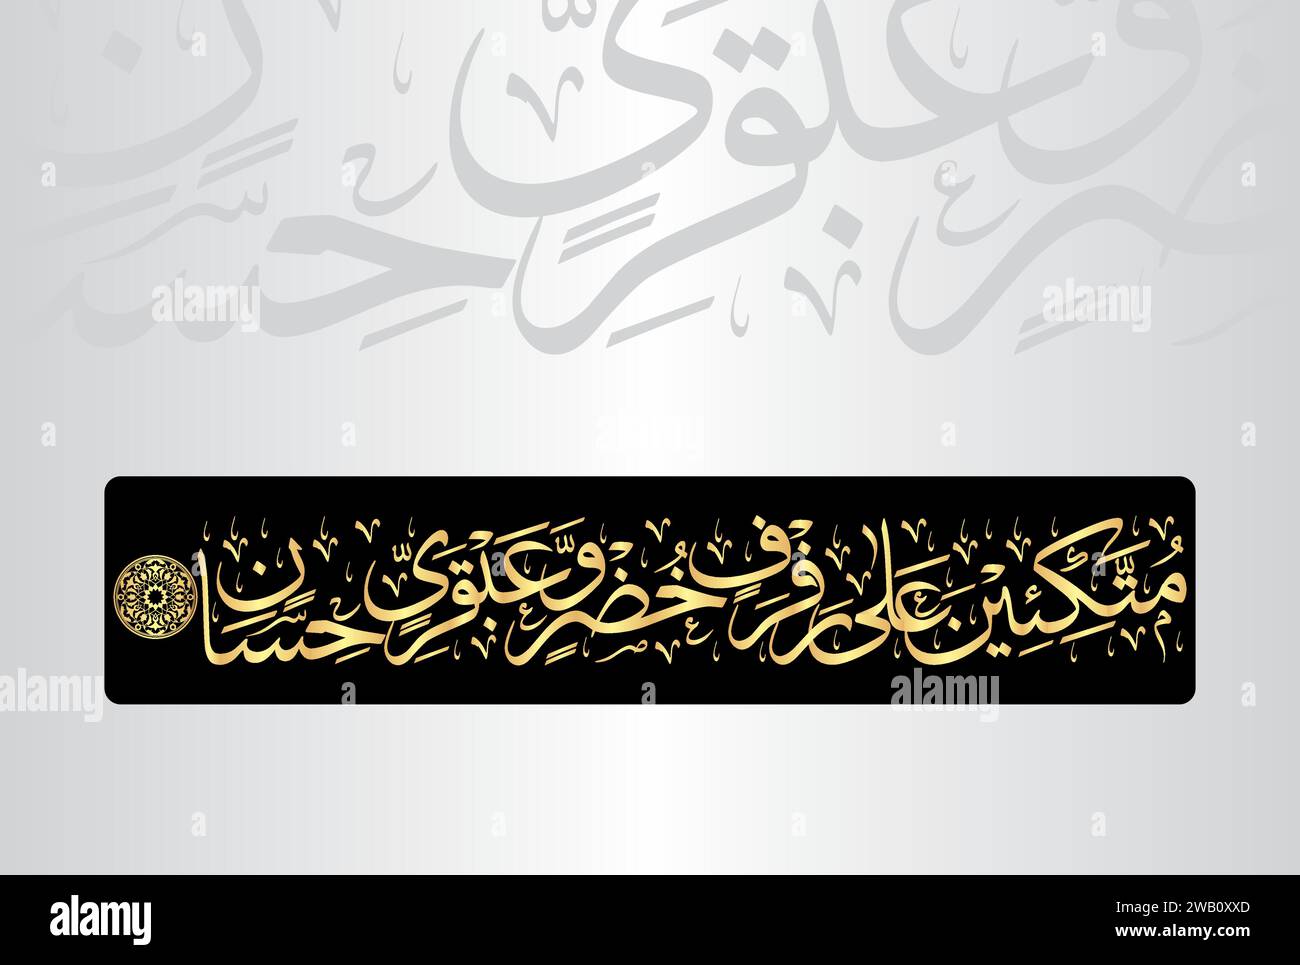 Calligraphie arabe, verset no 76 du chapitre 'AR Rahman 55' du Noble Coran. Traduction, 'tous les 'croyants' seront couchés sur des coussins verts et... Illustration de Vecteur